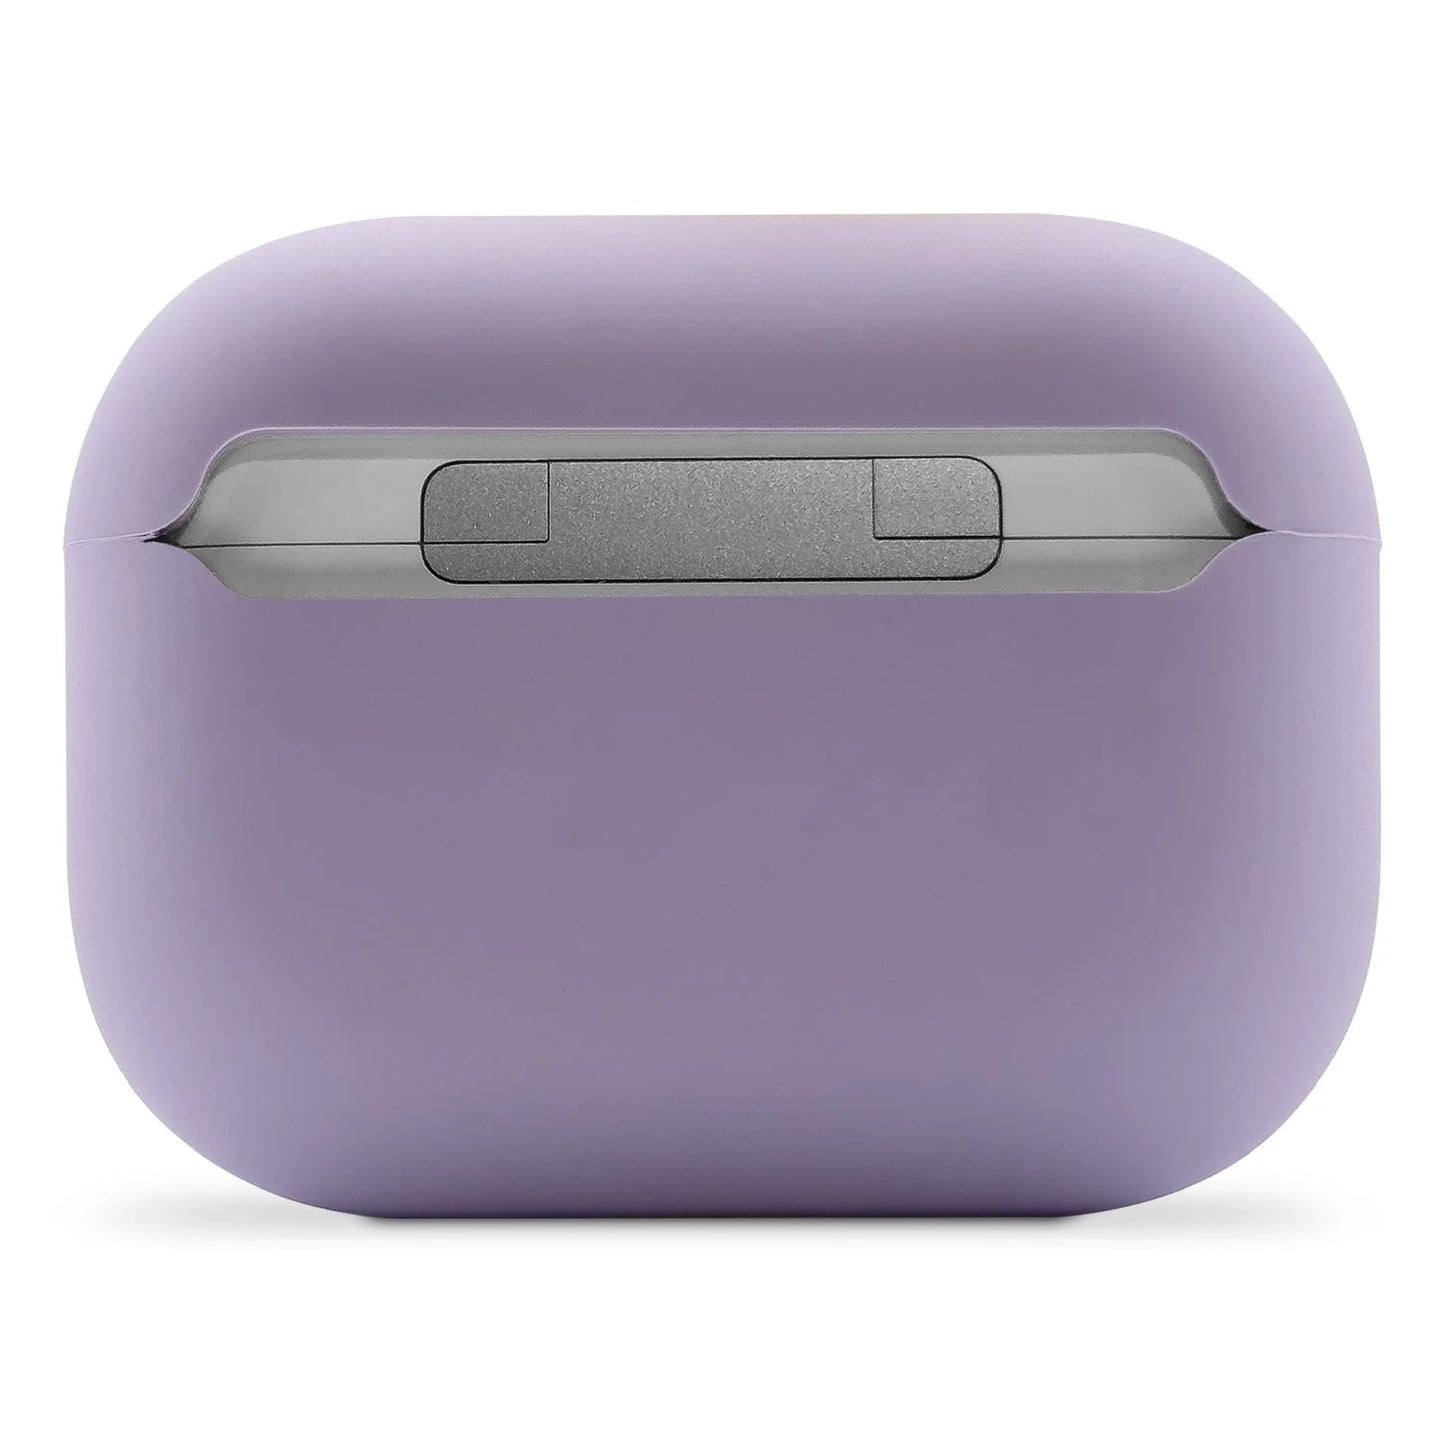 Decoded Silicone Aircase pour AirPods Pro (2e gén.) - Lavender